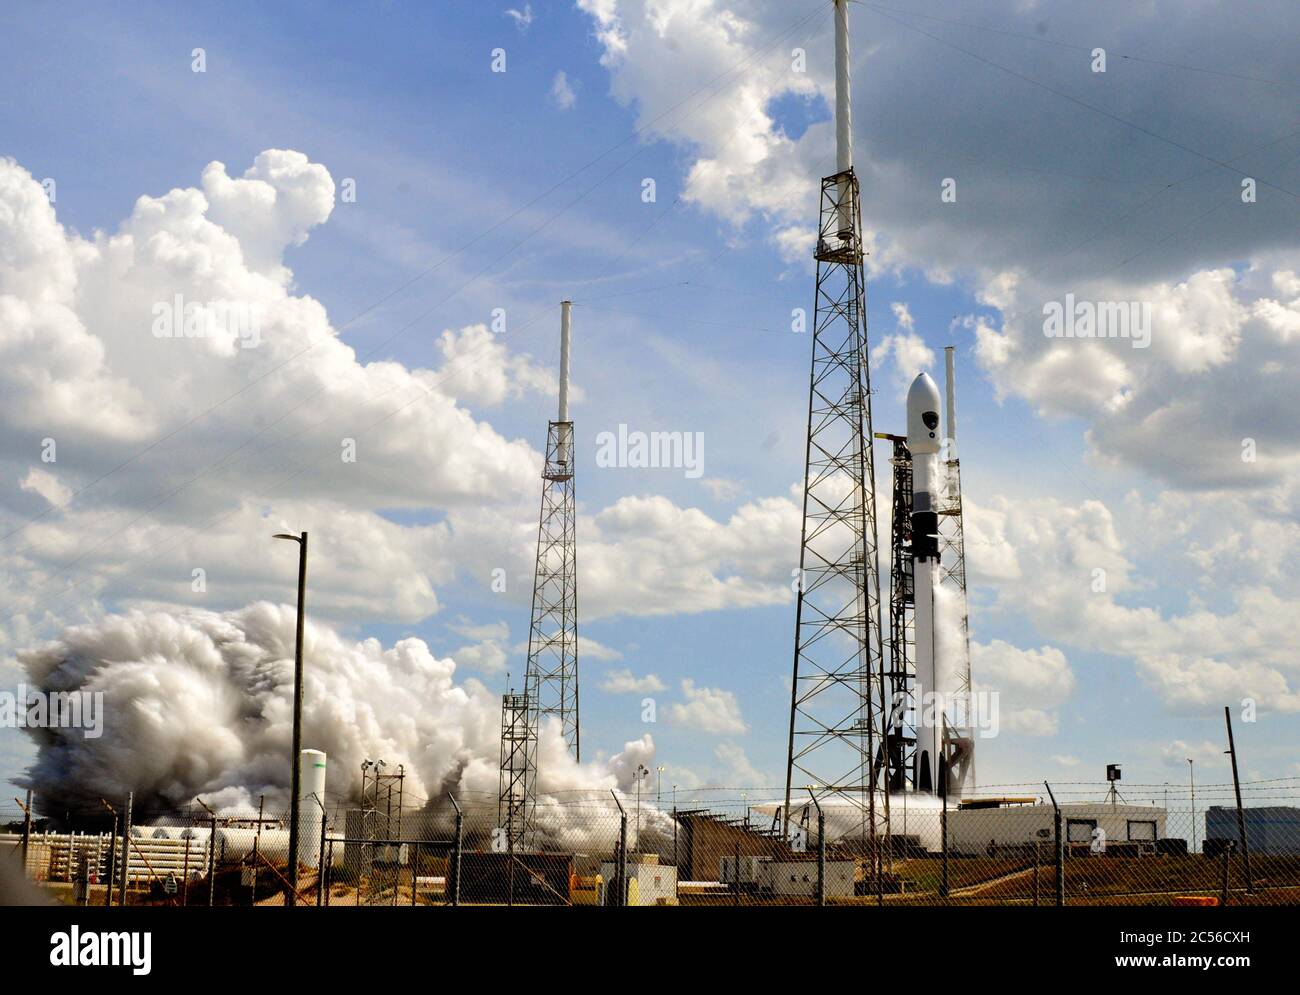 Stazione dell'aeronautica di Cape Canaveral. Florida. STATI UNITI. 30 giugno 2020. SpaceX ha lanciato un satellite GPS III SV03 da 9,505 libbre a bordo di un razzo Falcon 9 a fine martedì pomeriggio, dal complesso di lancio spaziale 40 per la forza spaziale degli Stati Uniti. Dopo il lancio, la prima tappa di Falcon 9 è atterrata sulla nave drone "Just Read the Instructions" nell'Oceano Atlantico al largo della costa della Florida. Photo Credit: Julian Leek/Alamy Live News Foto Stock